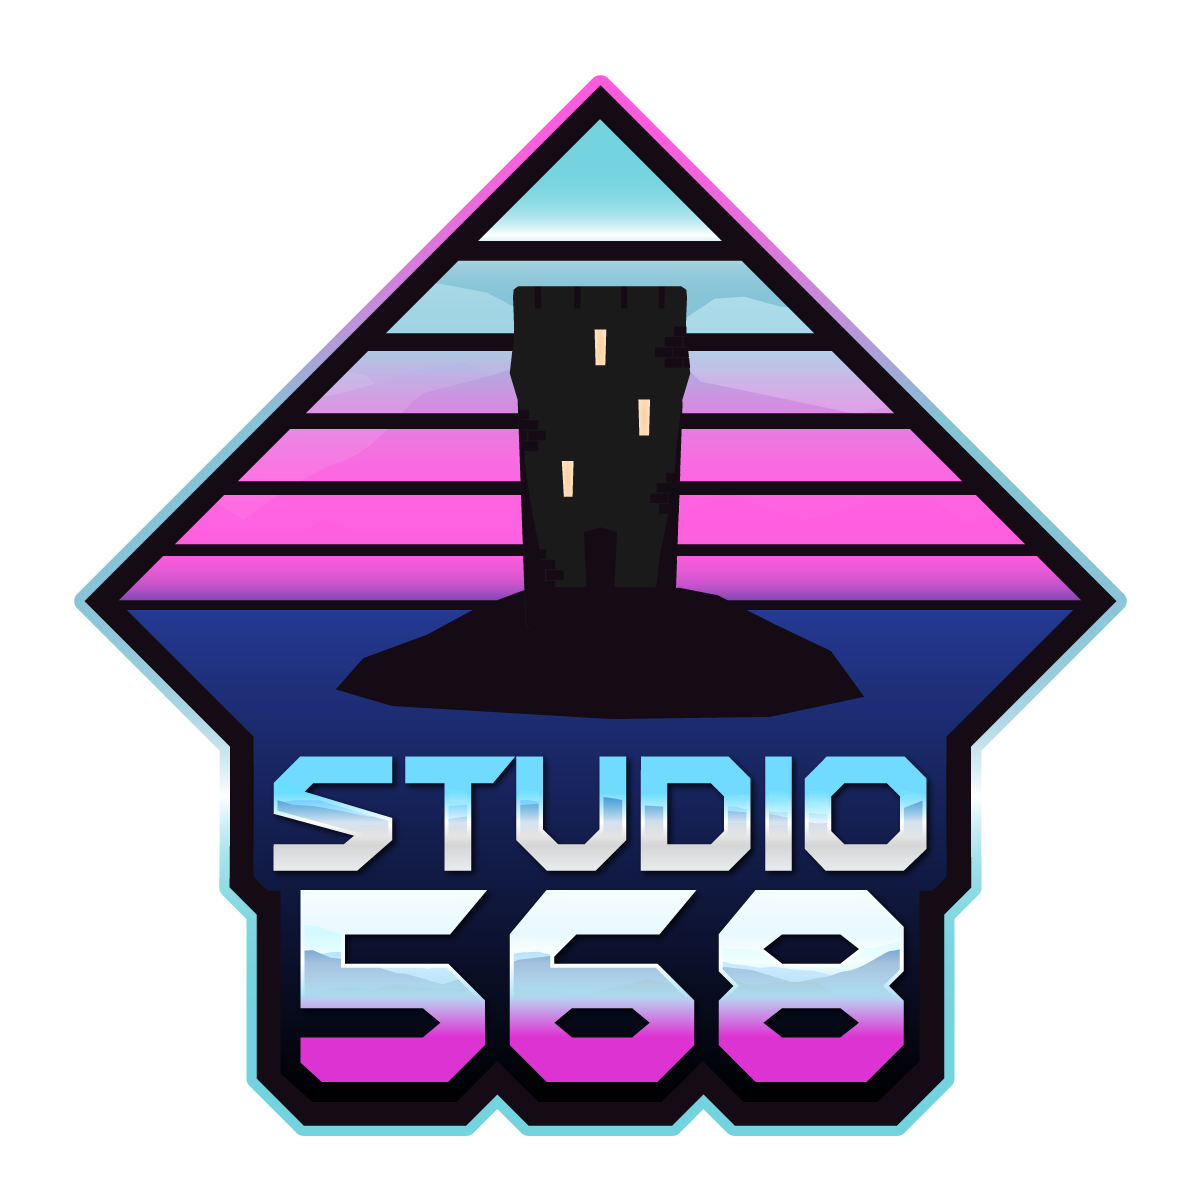 Studio 568